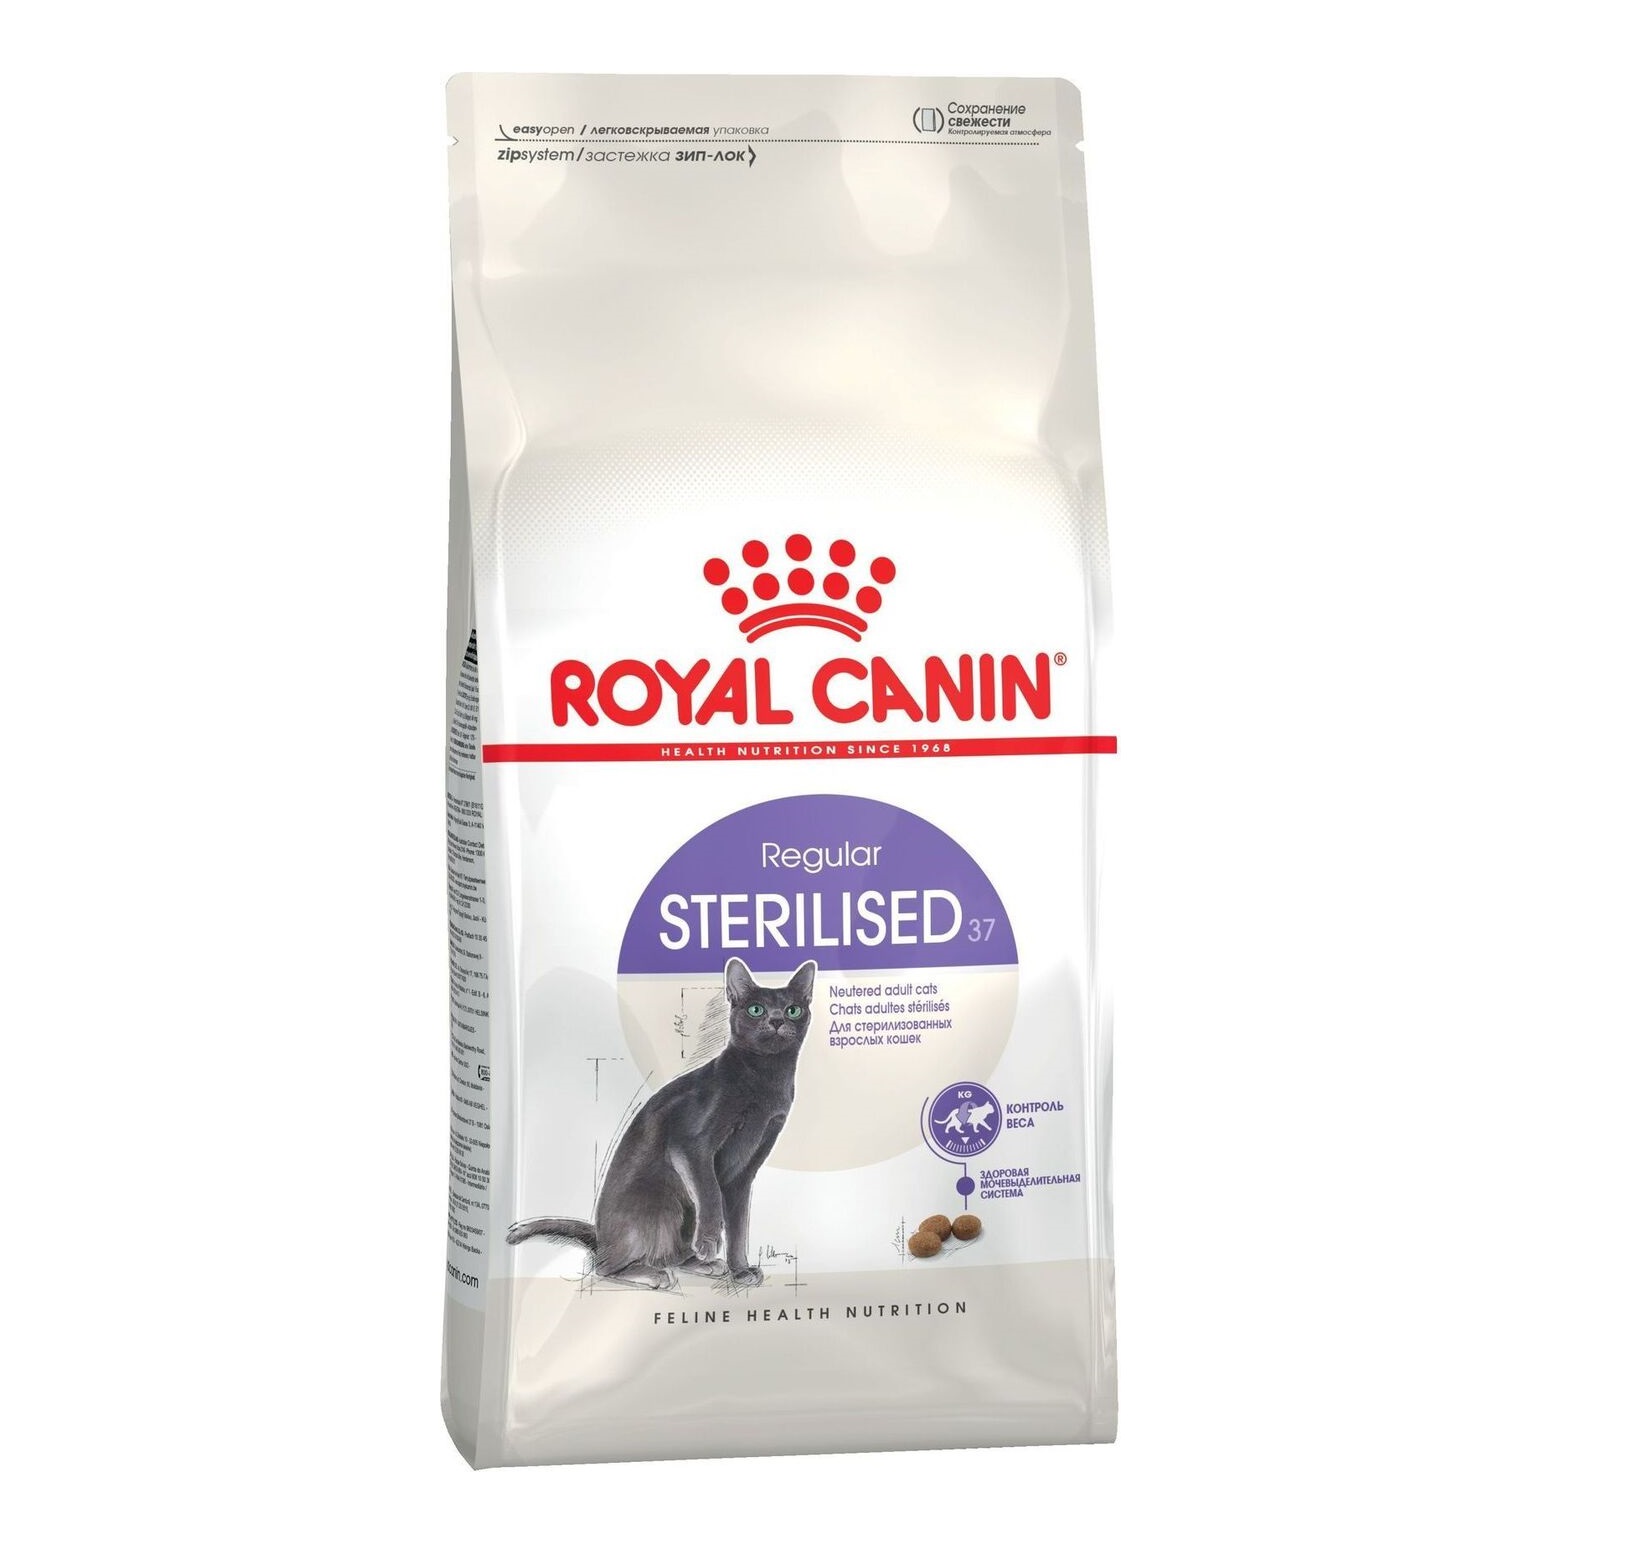 Ройал Канин Стерилизованные кошки 1,2кг (Royal Canin)